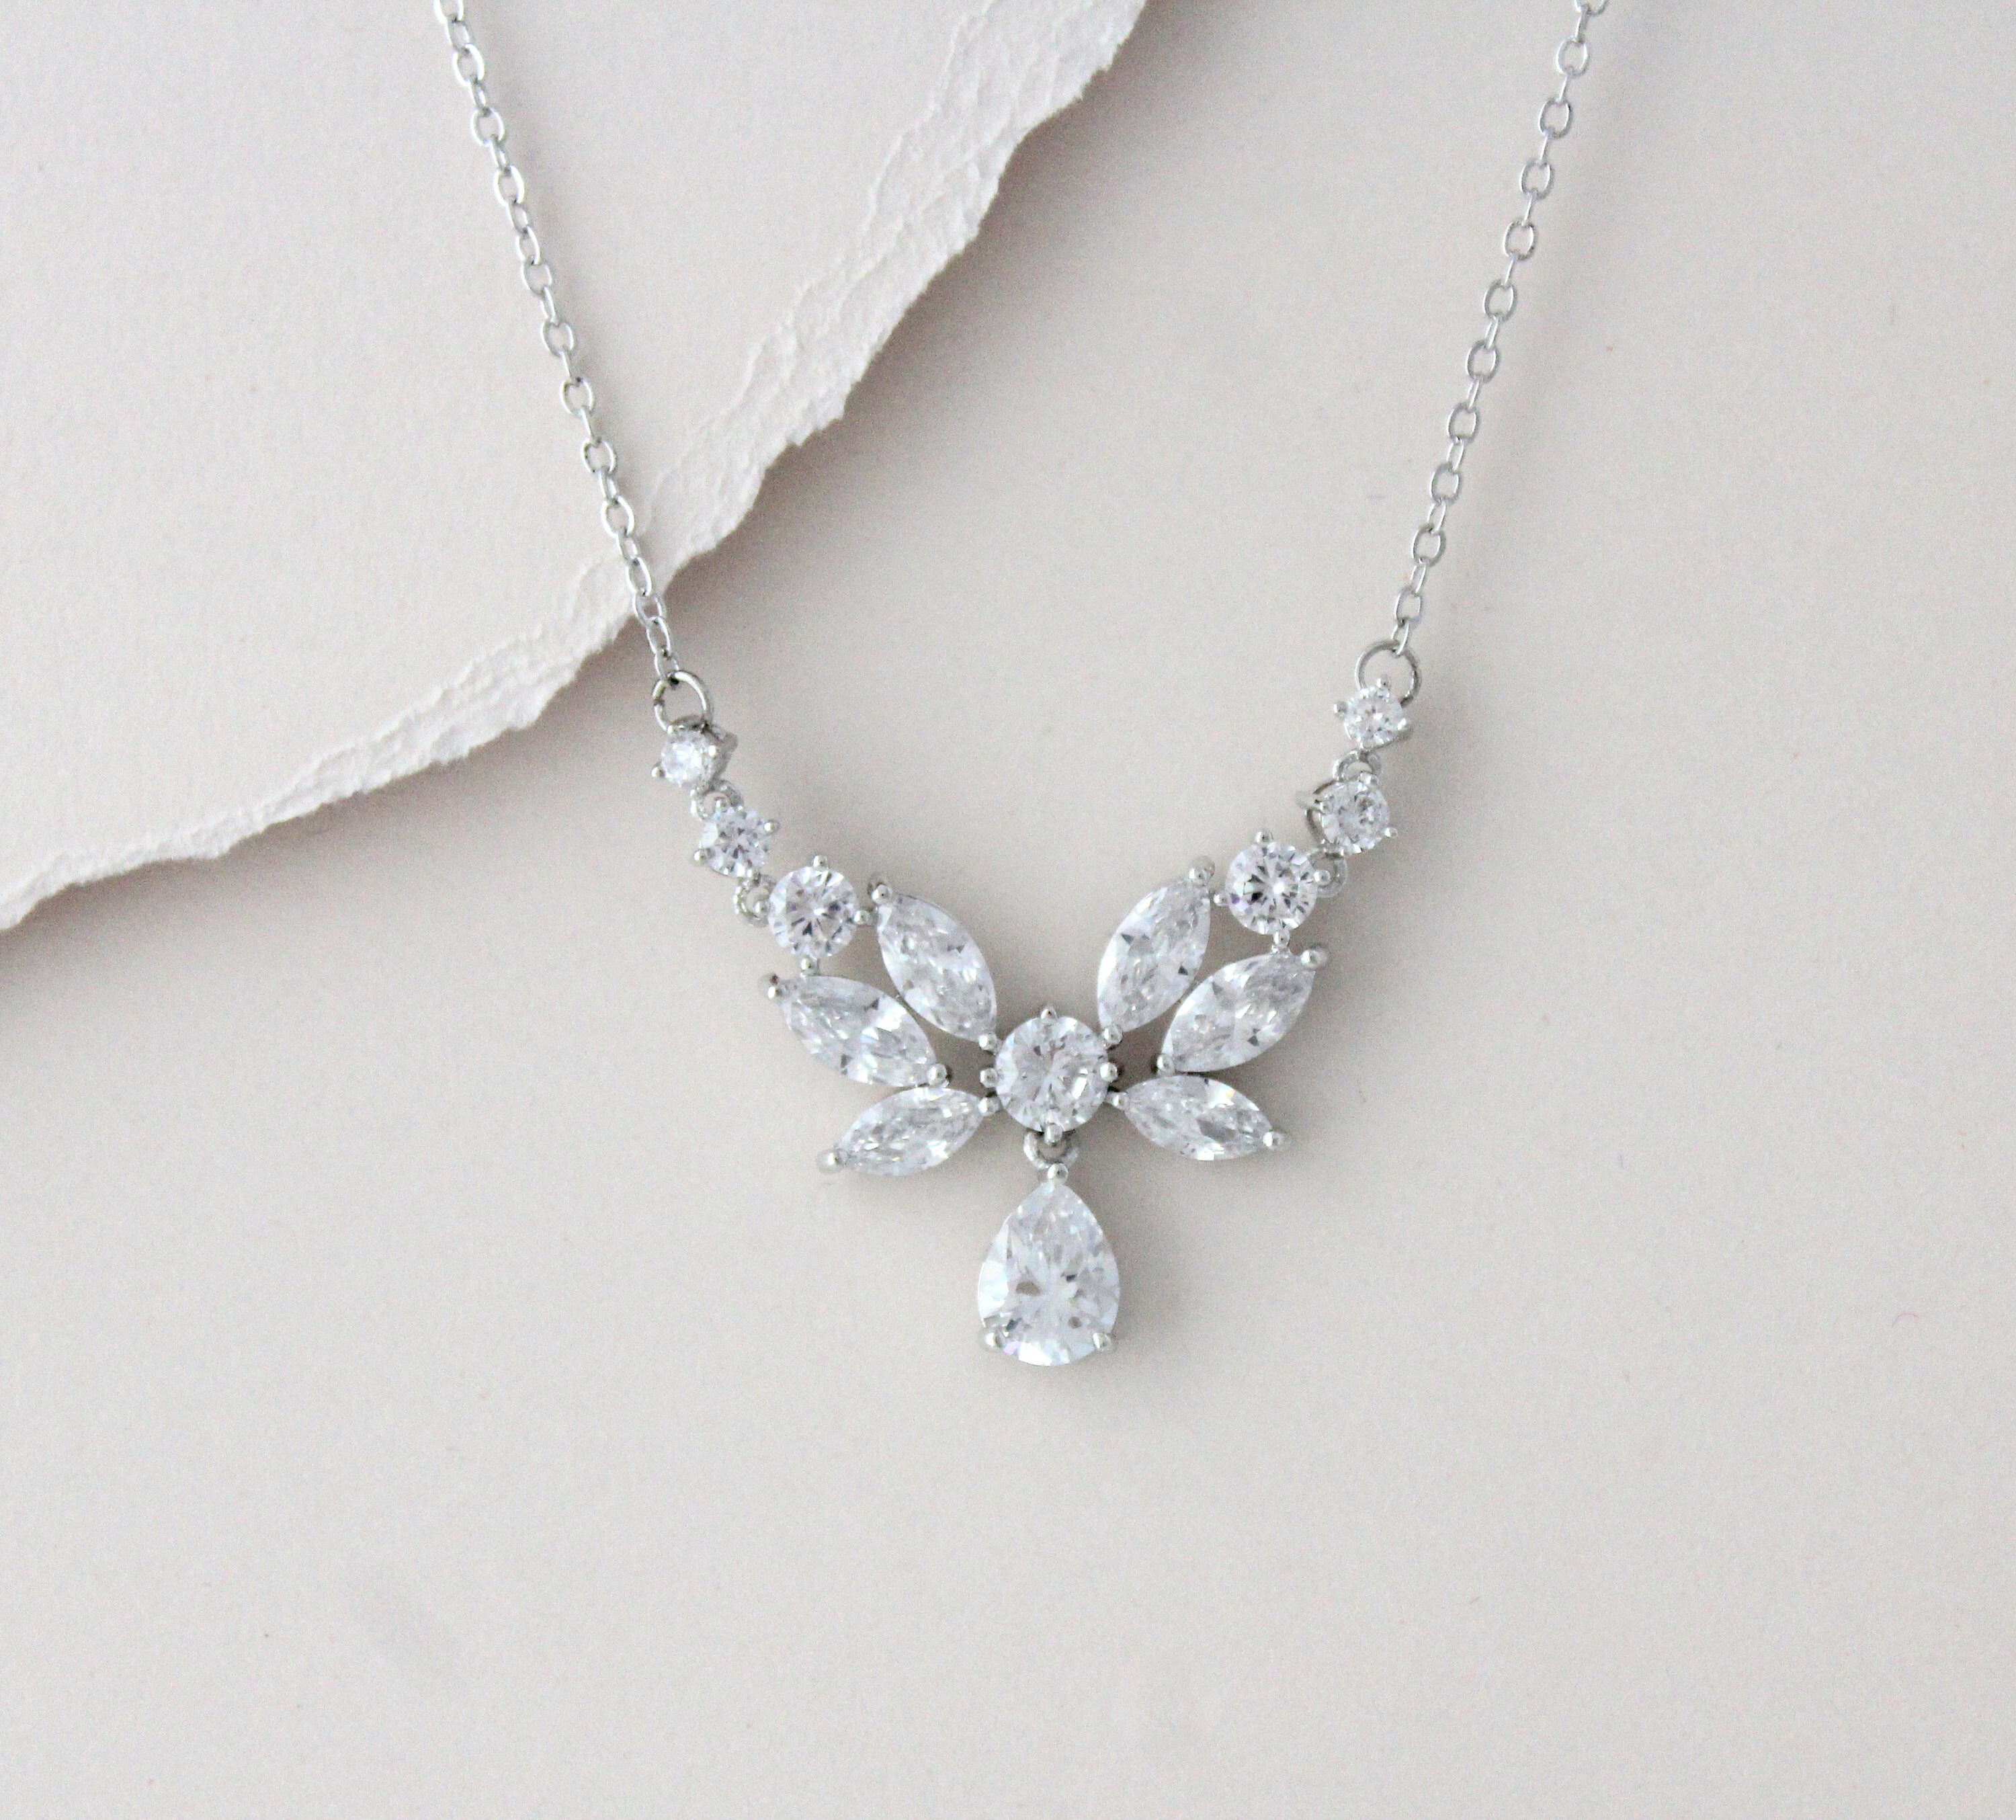 77b Dainty Sweet SP Bridal Rhinestone Crystal Pearl 5 Daisy Flower Necklace Set 